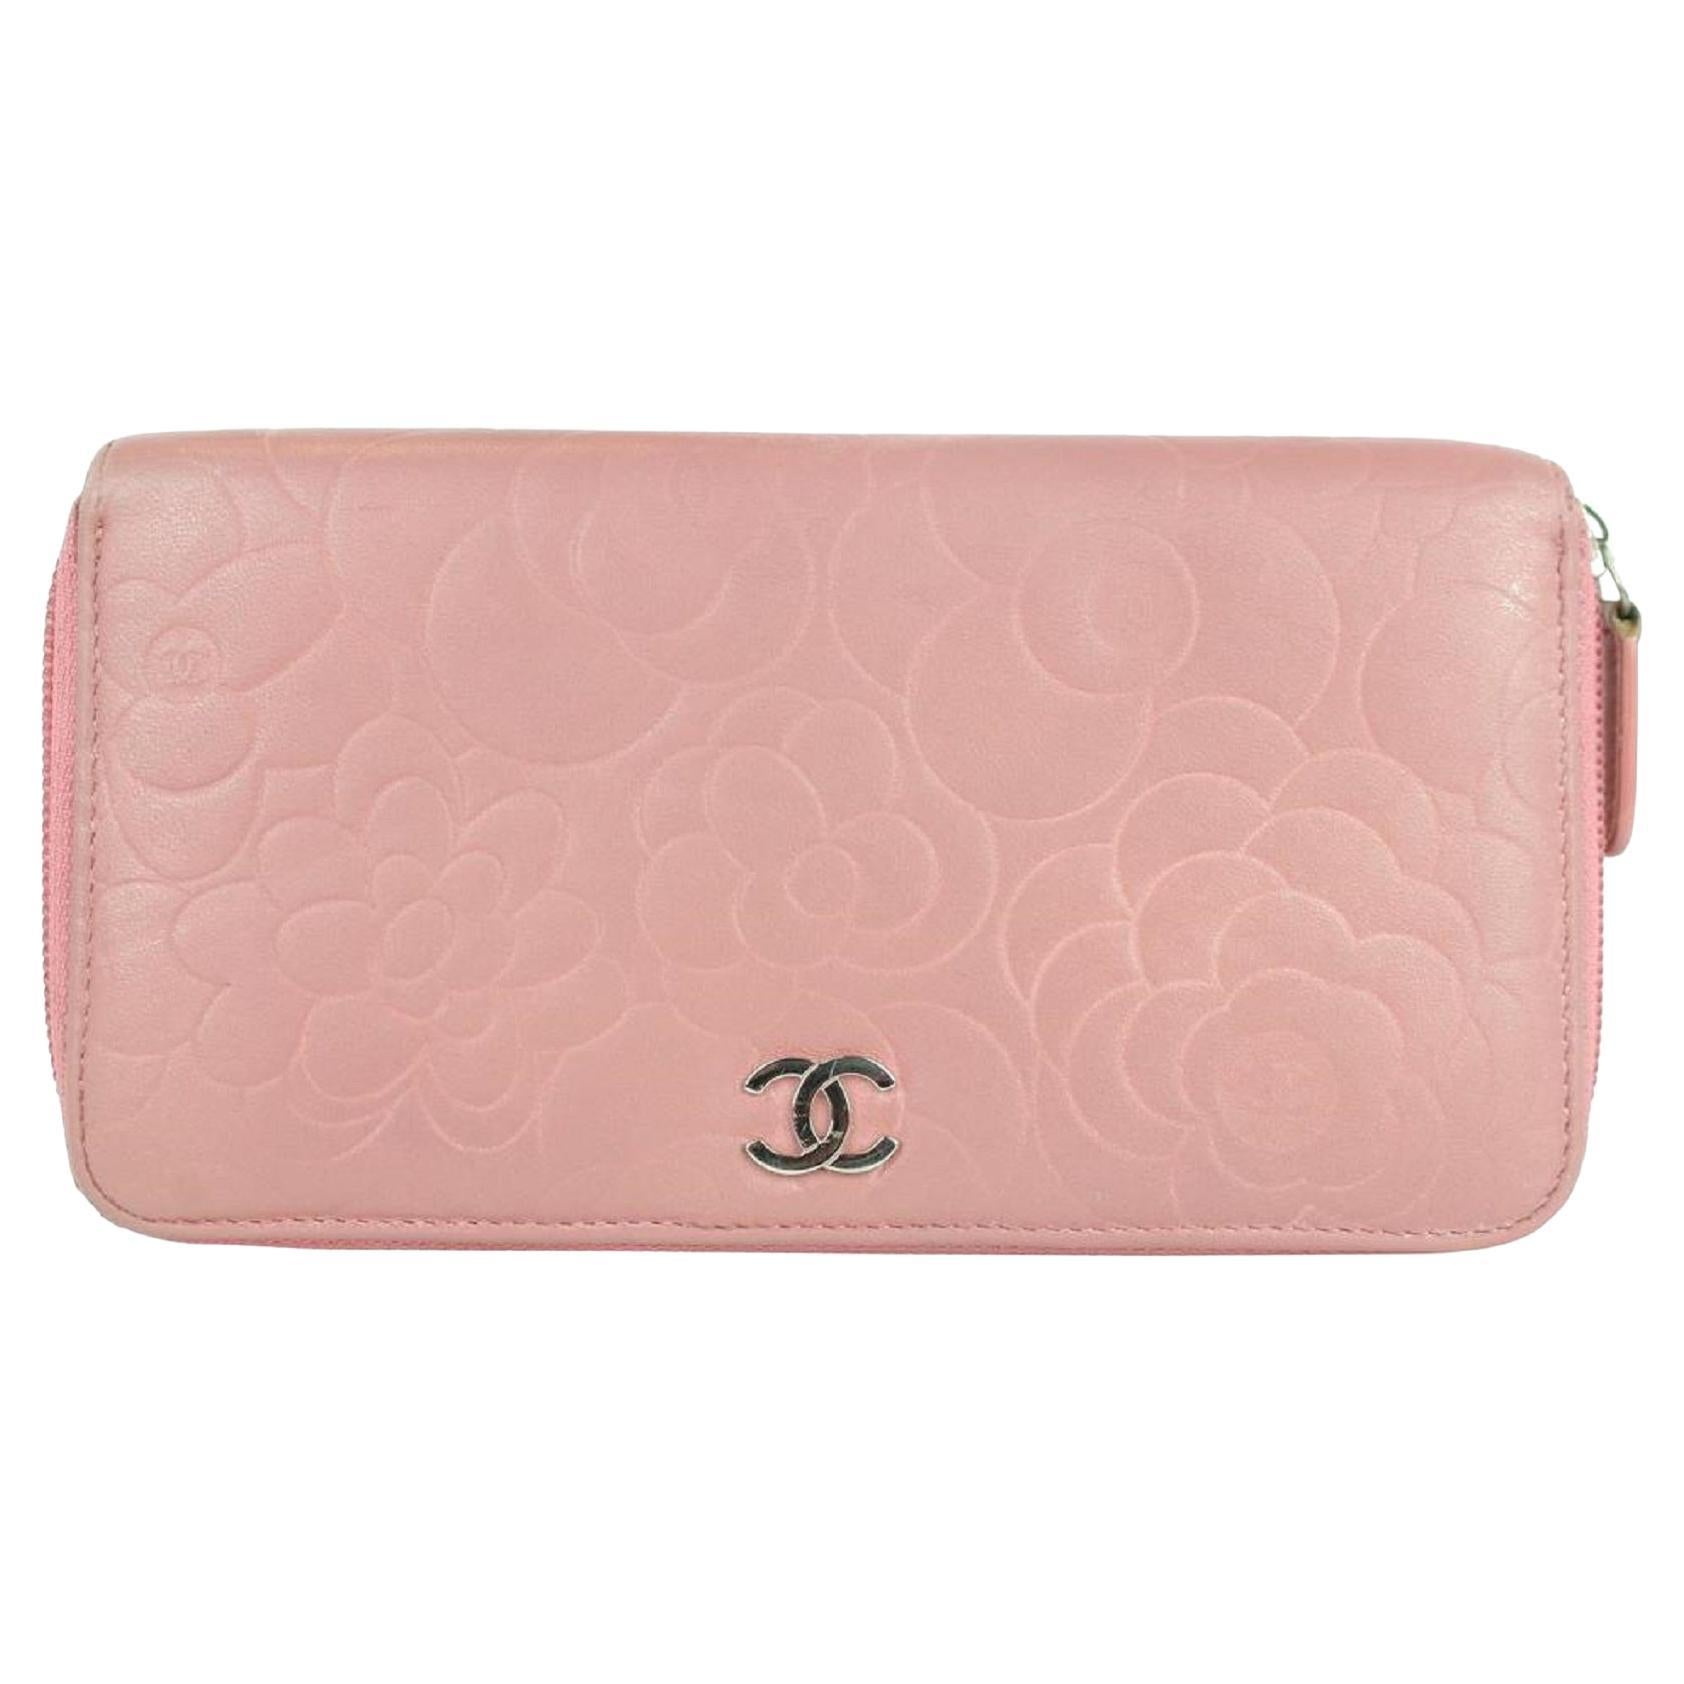 Pink Vintage Chanel Wallet - 2 For Sale on 1stDibs